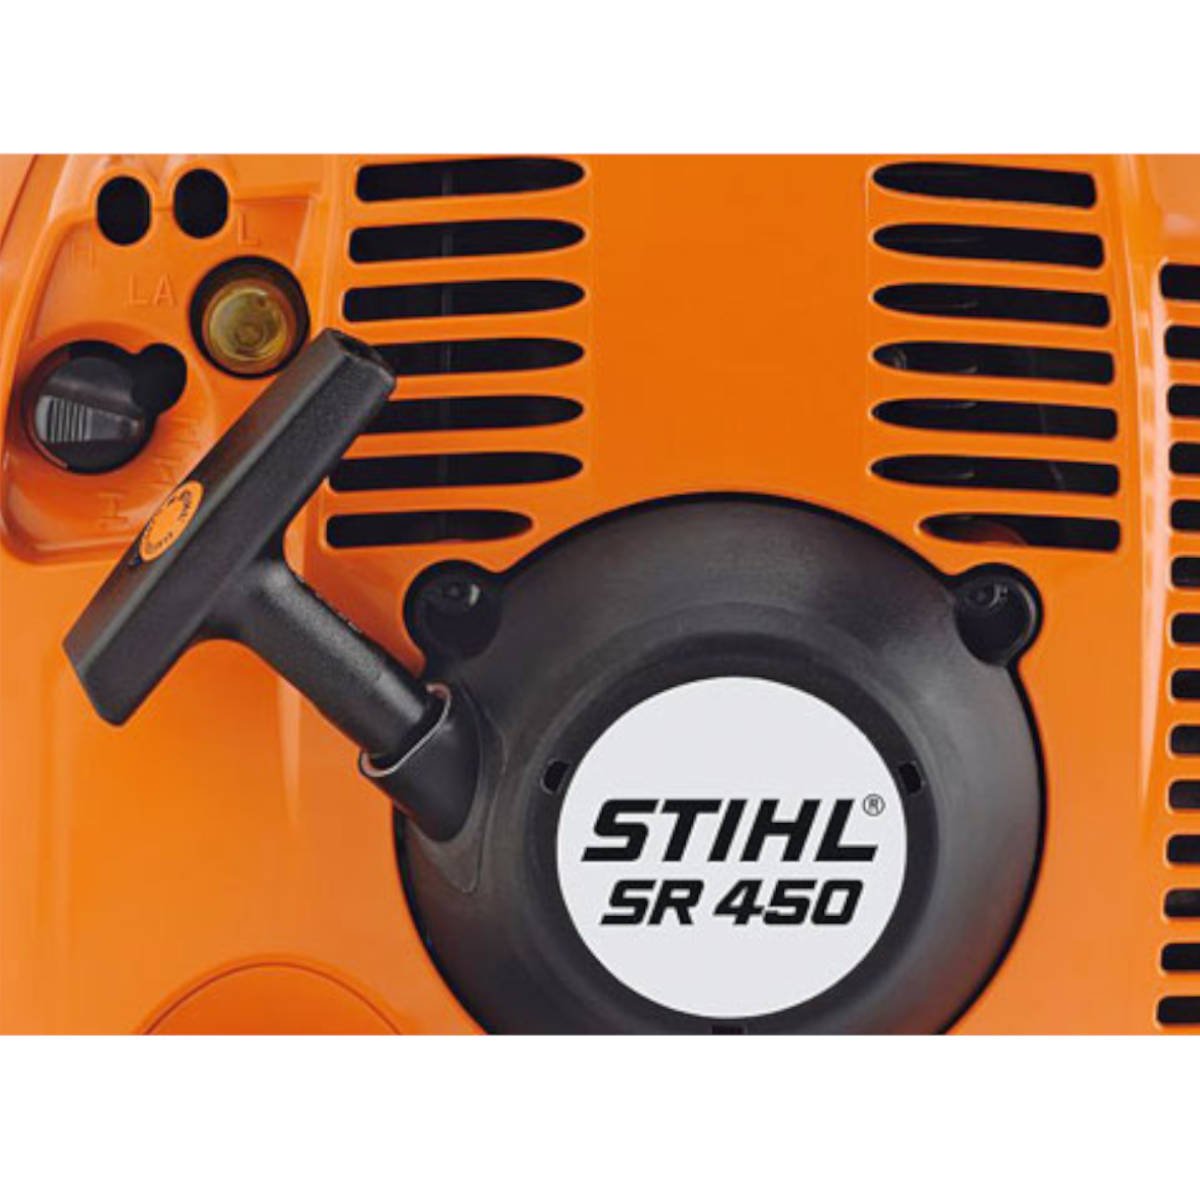 Atomizzatore Stihl SR 450 - alliastore